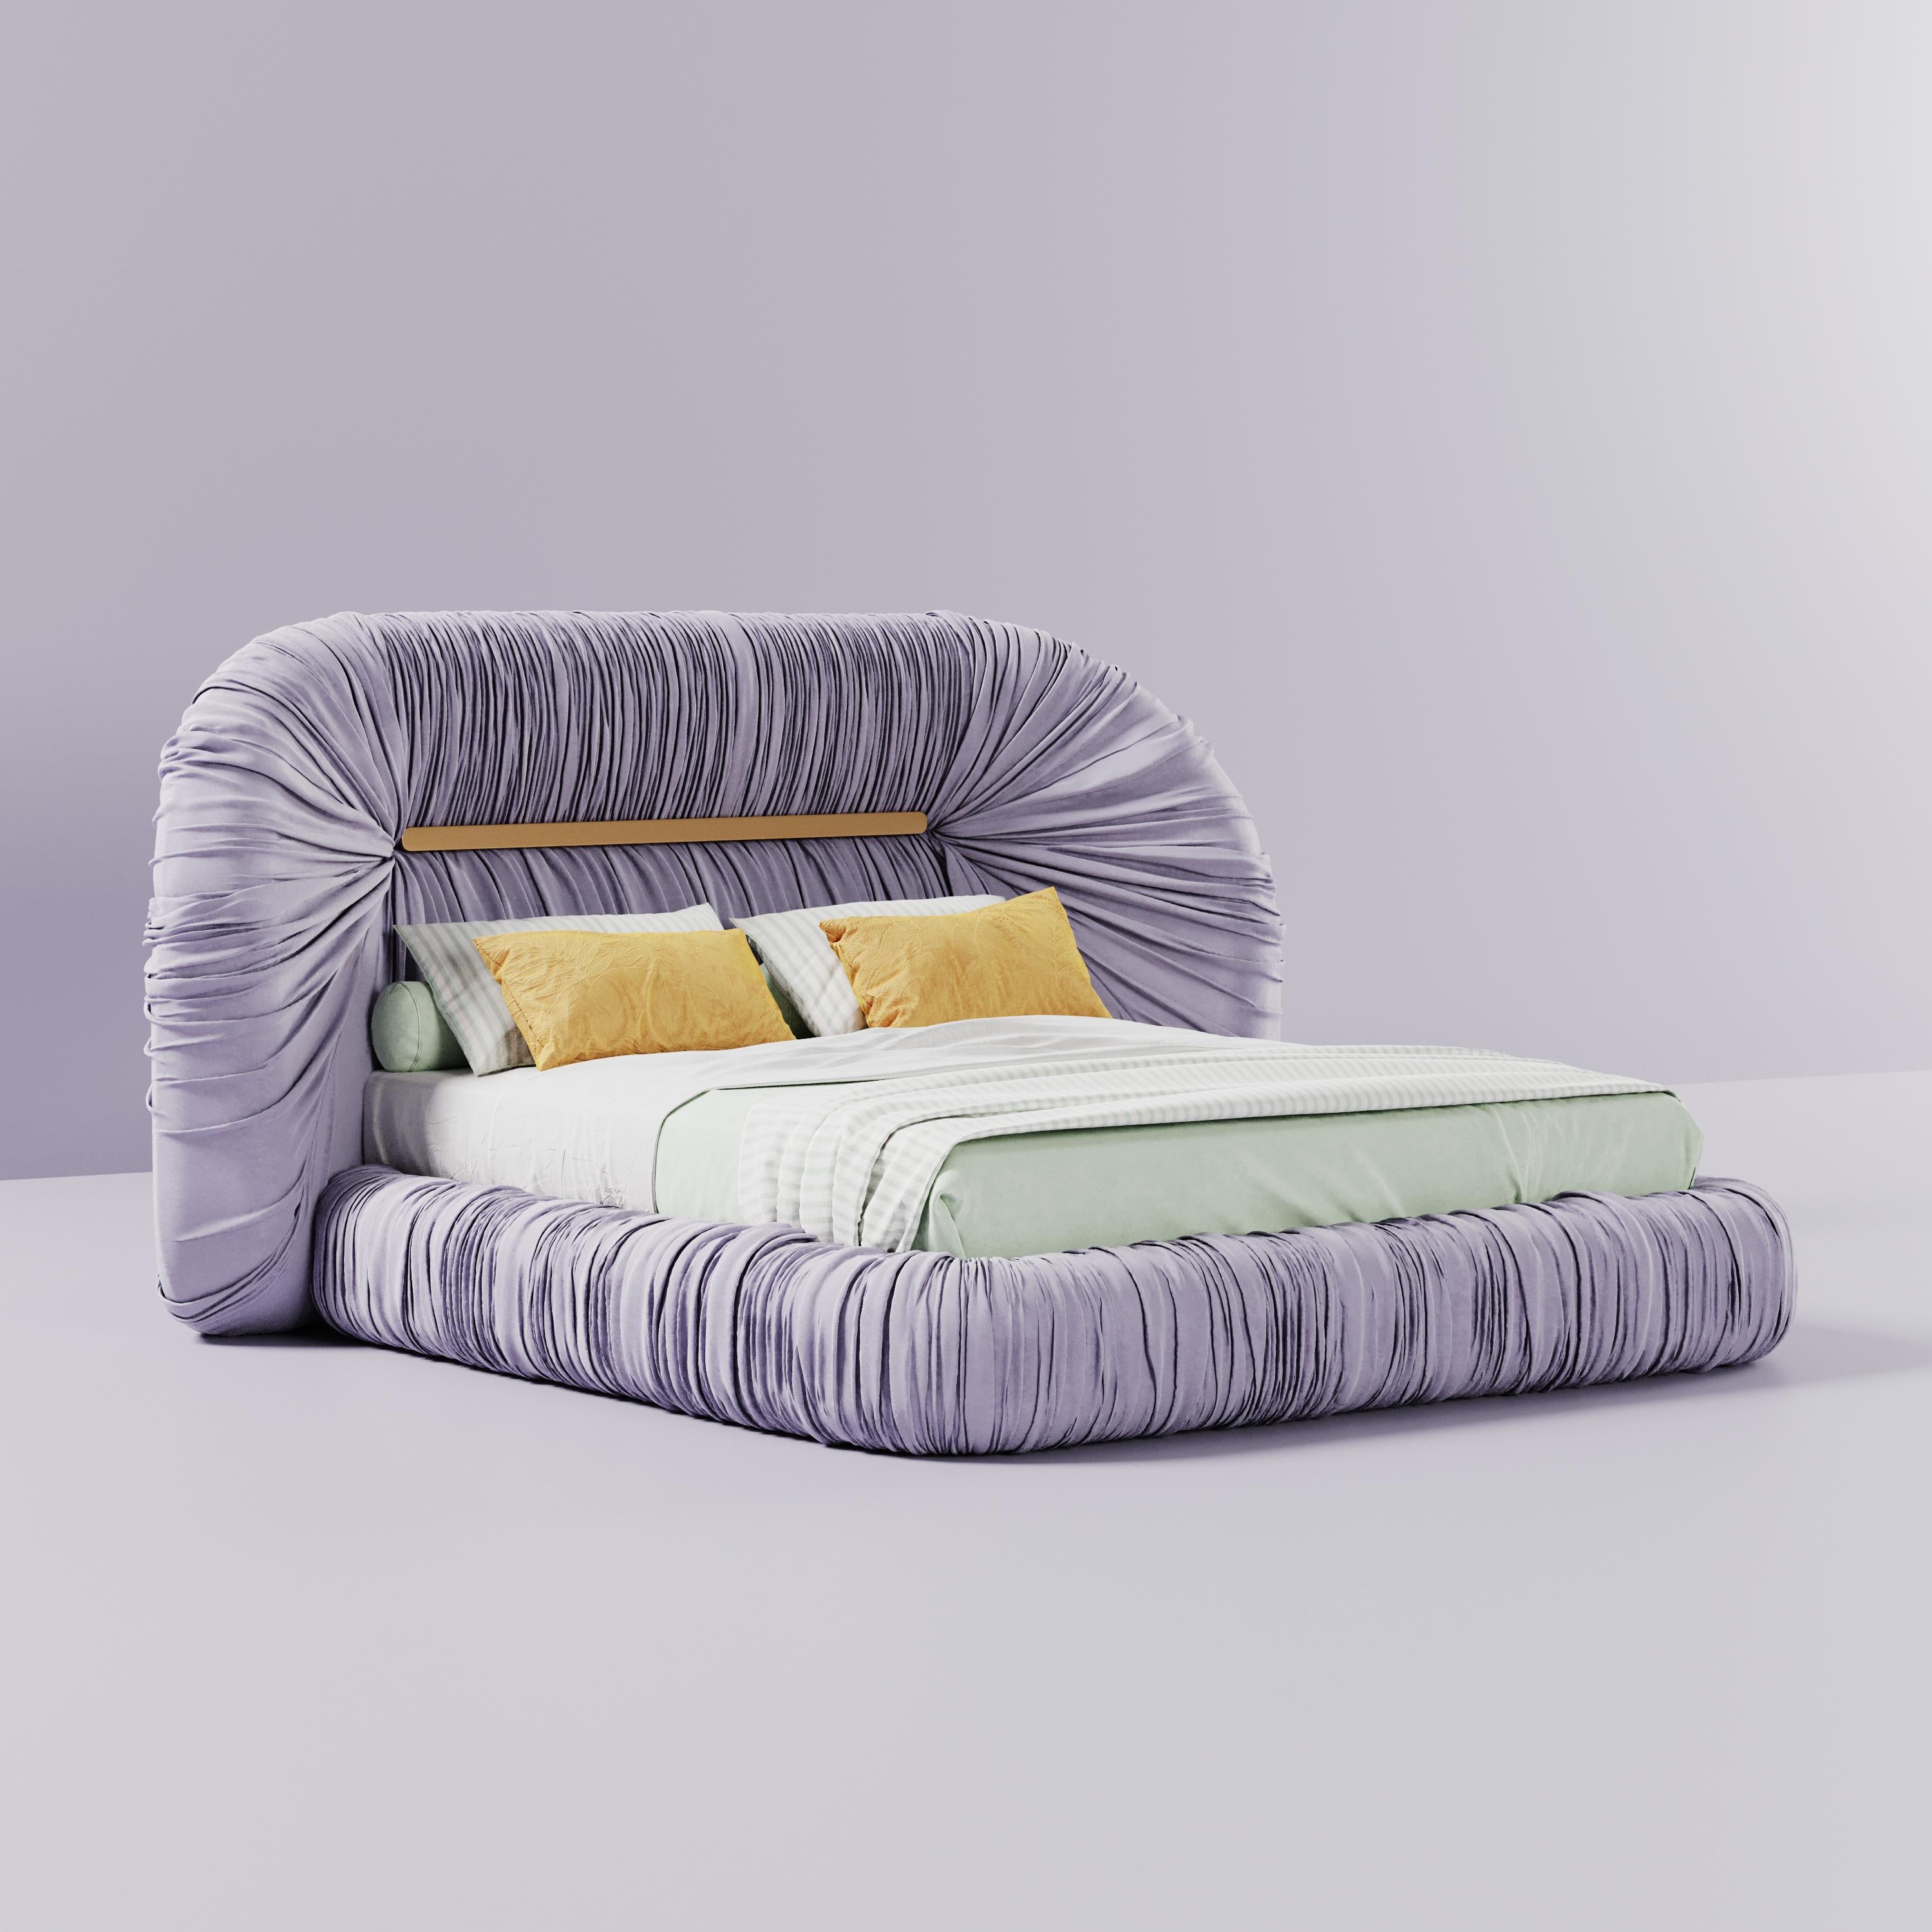 Mid-Century Modern-Inspired Tammi Bed Velvet by Ottiu For Sale 3